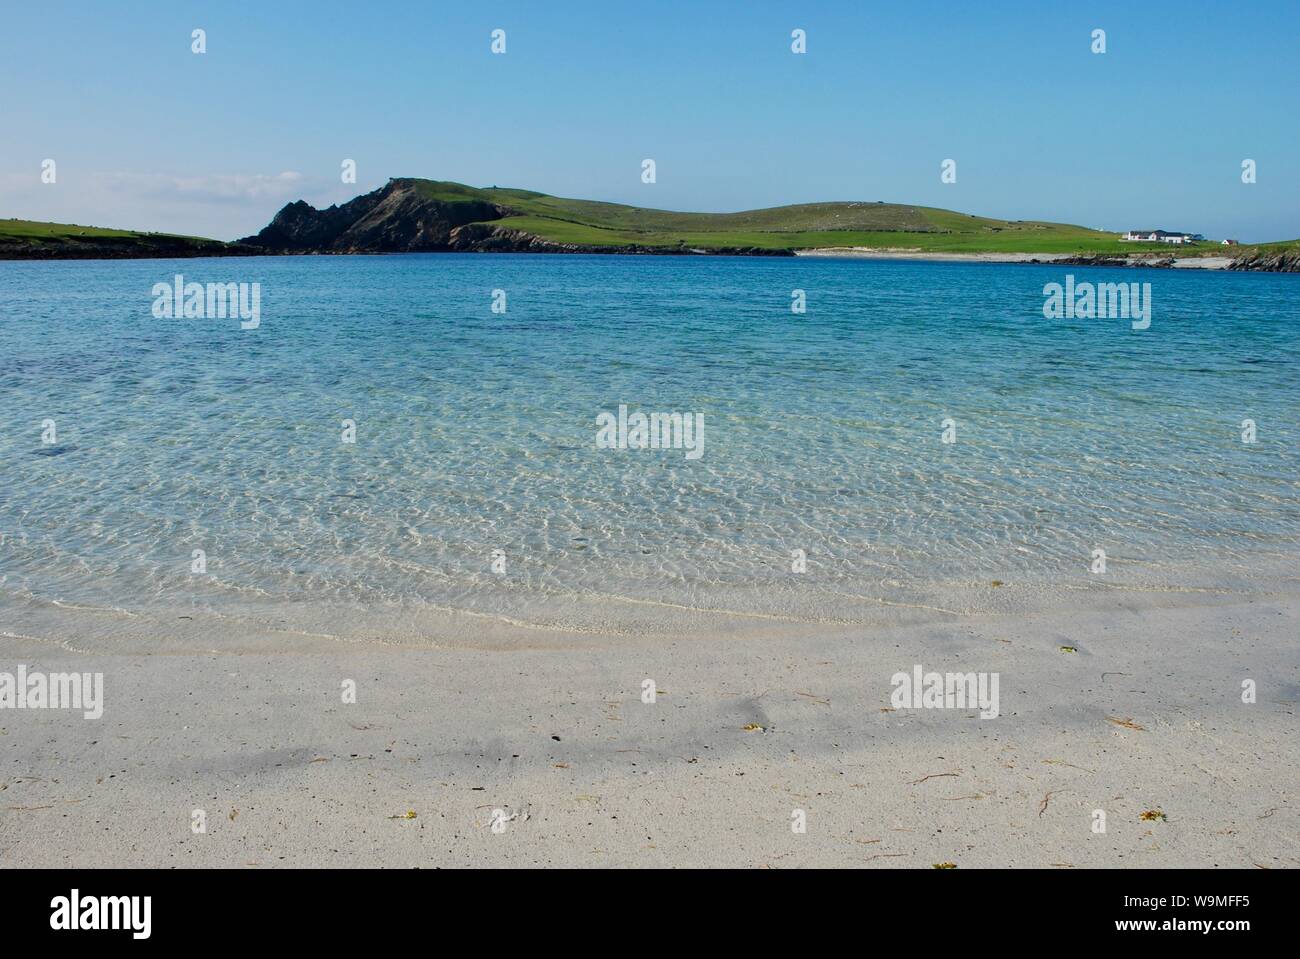 Banna Minn beach, Shetland Islands, Scotland, UK Stock Photo